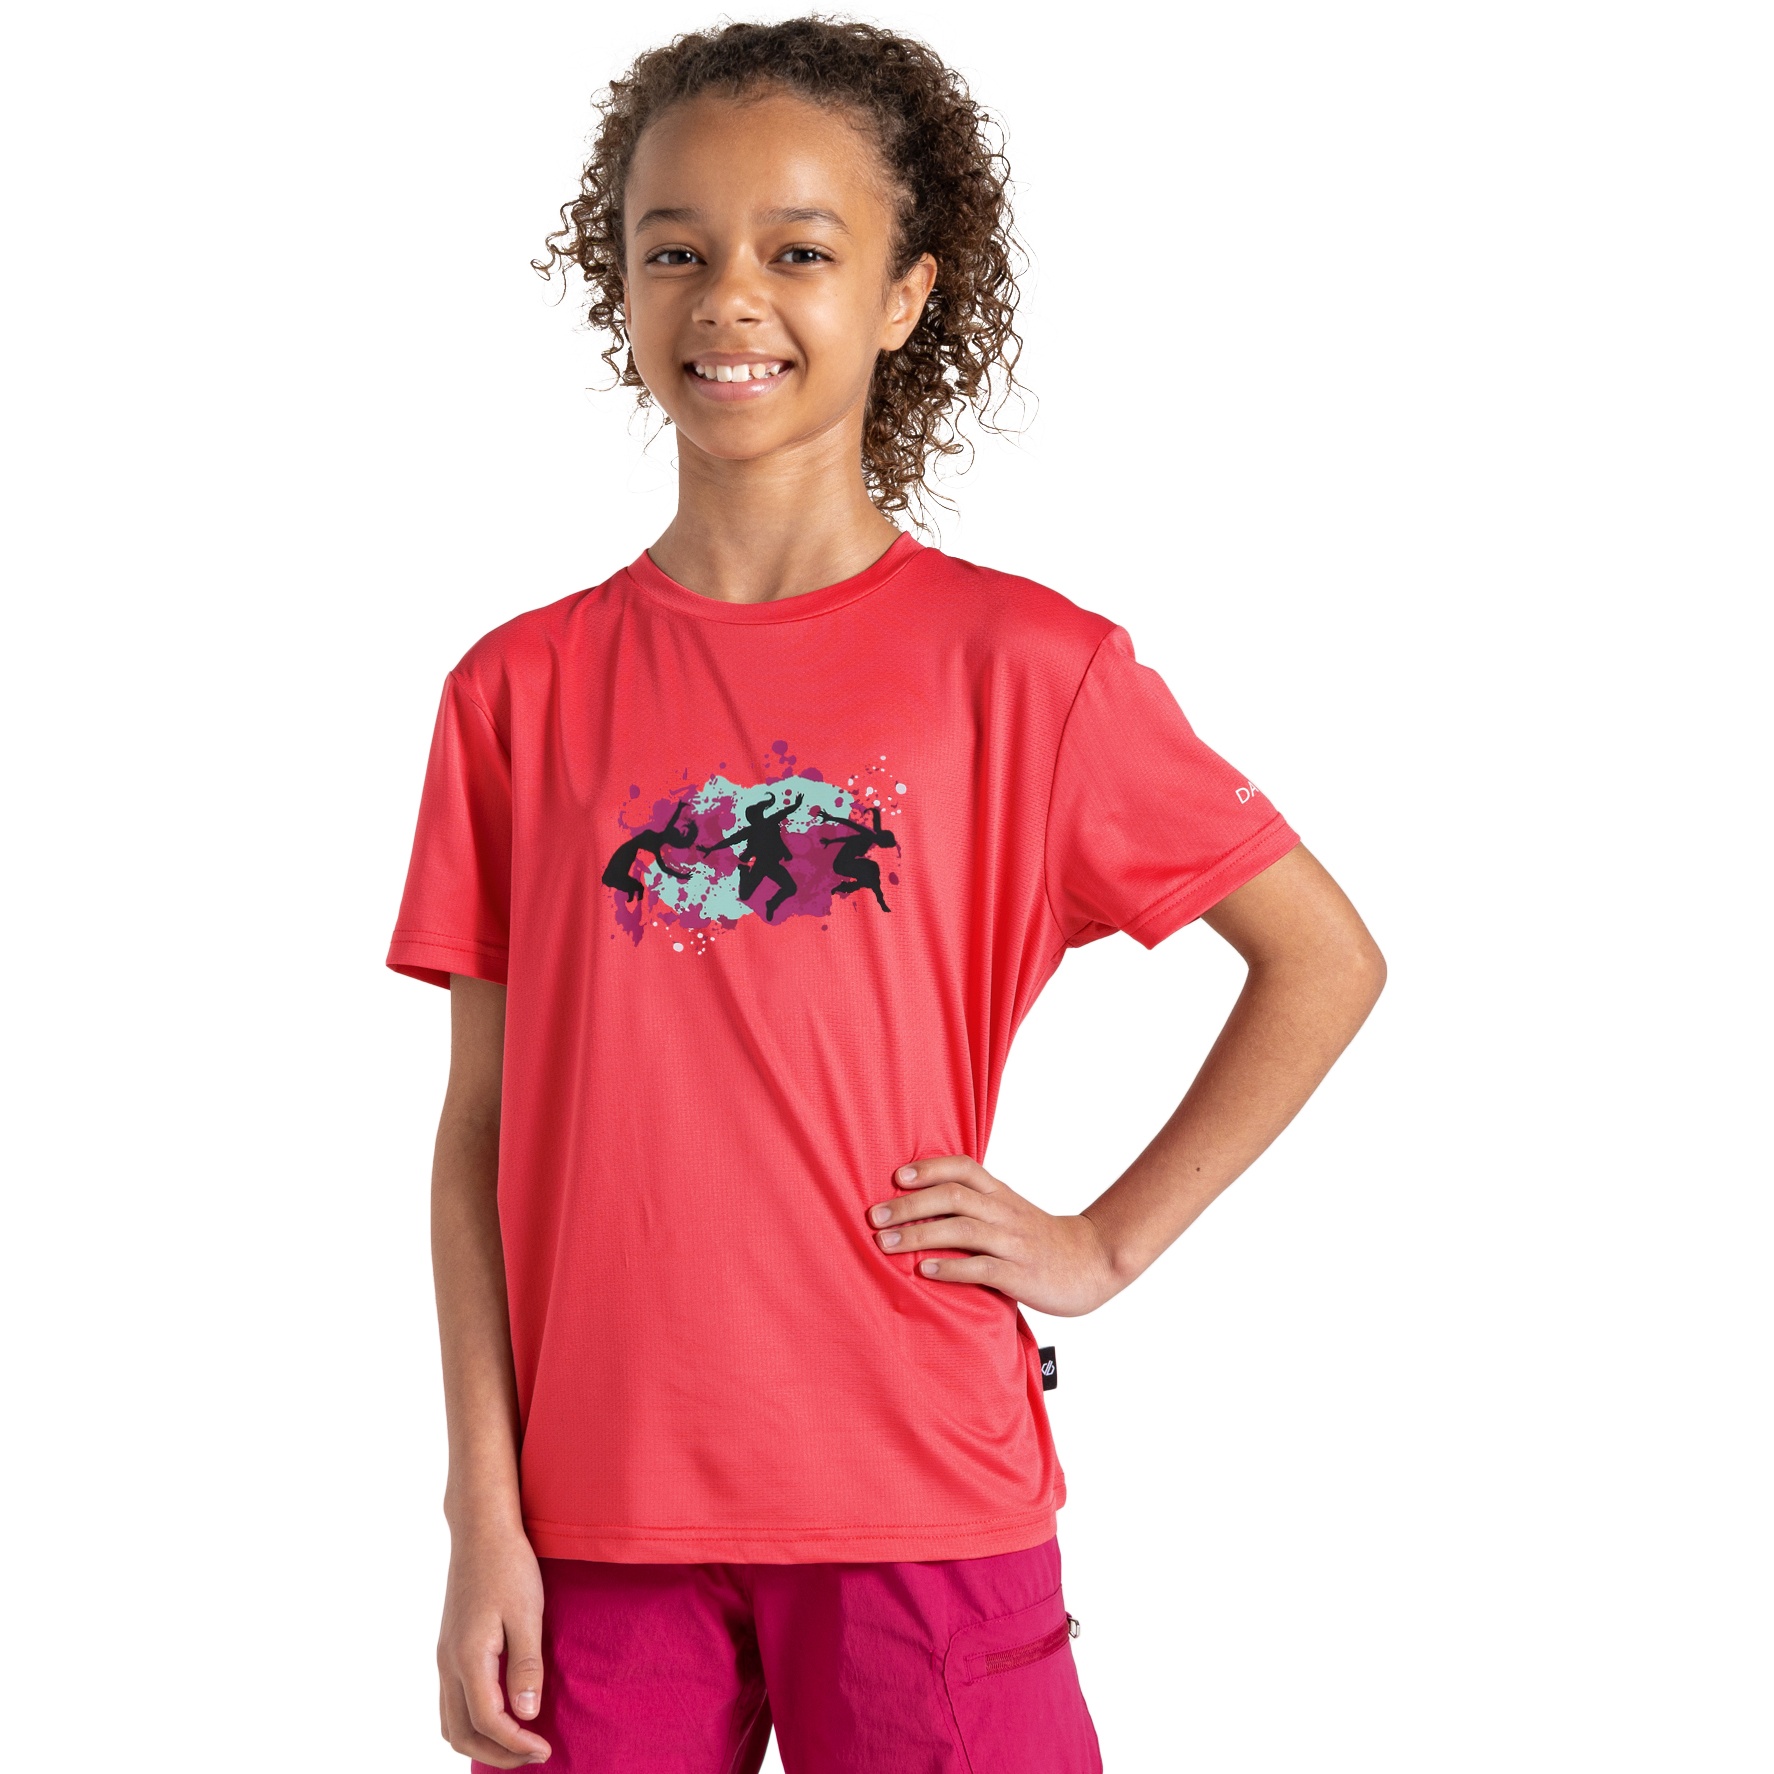 Produktbild von Dare 2b Amuse II T-Shirt Kinder - 83A Neon Pink